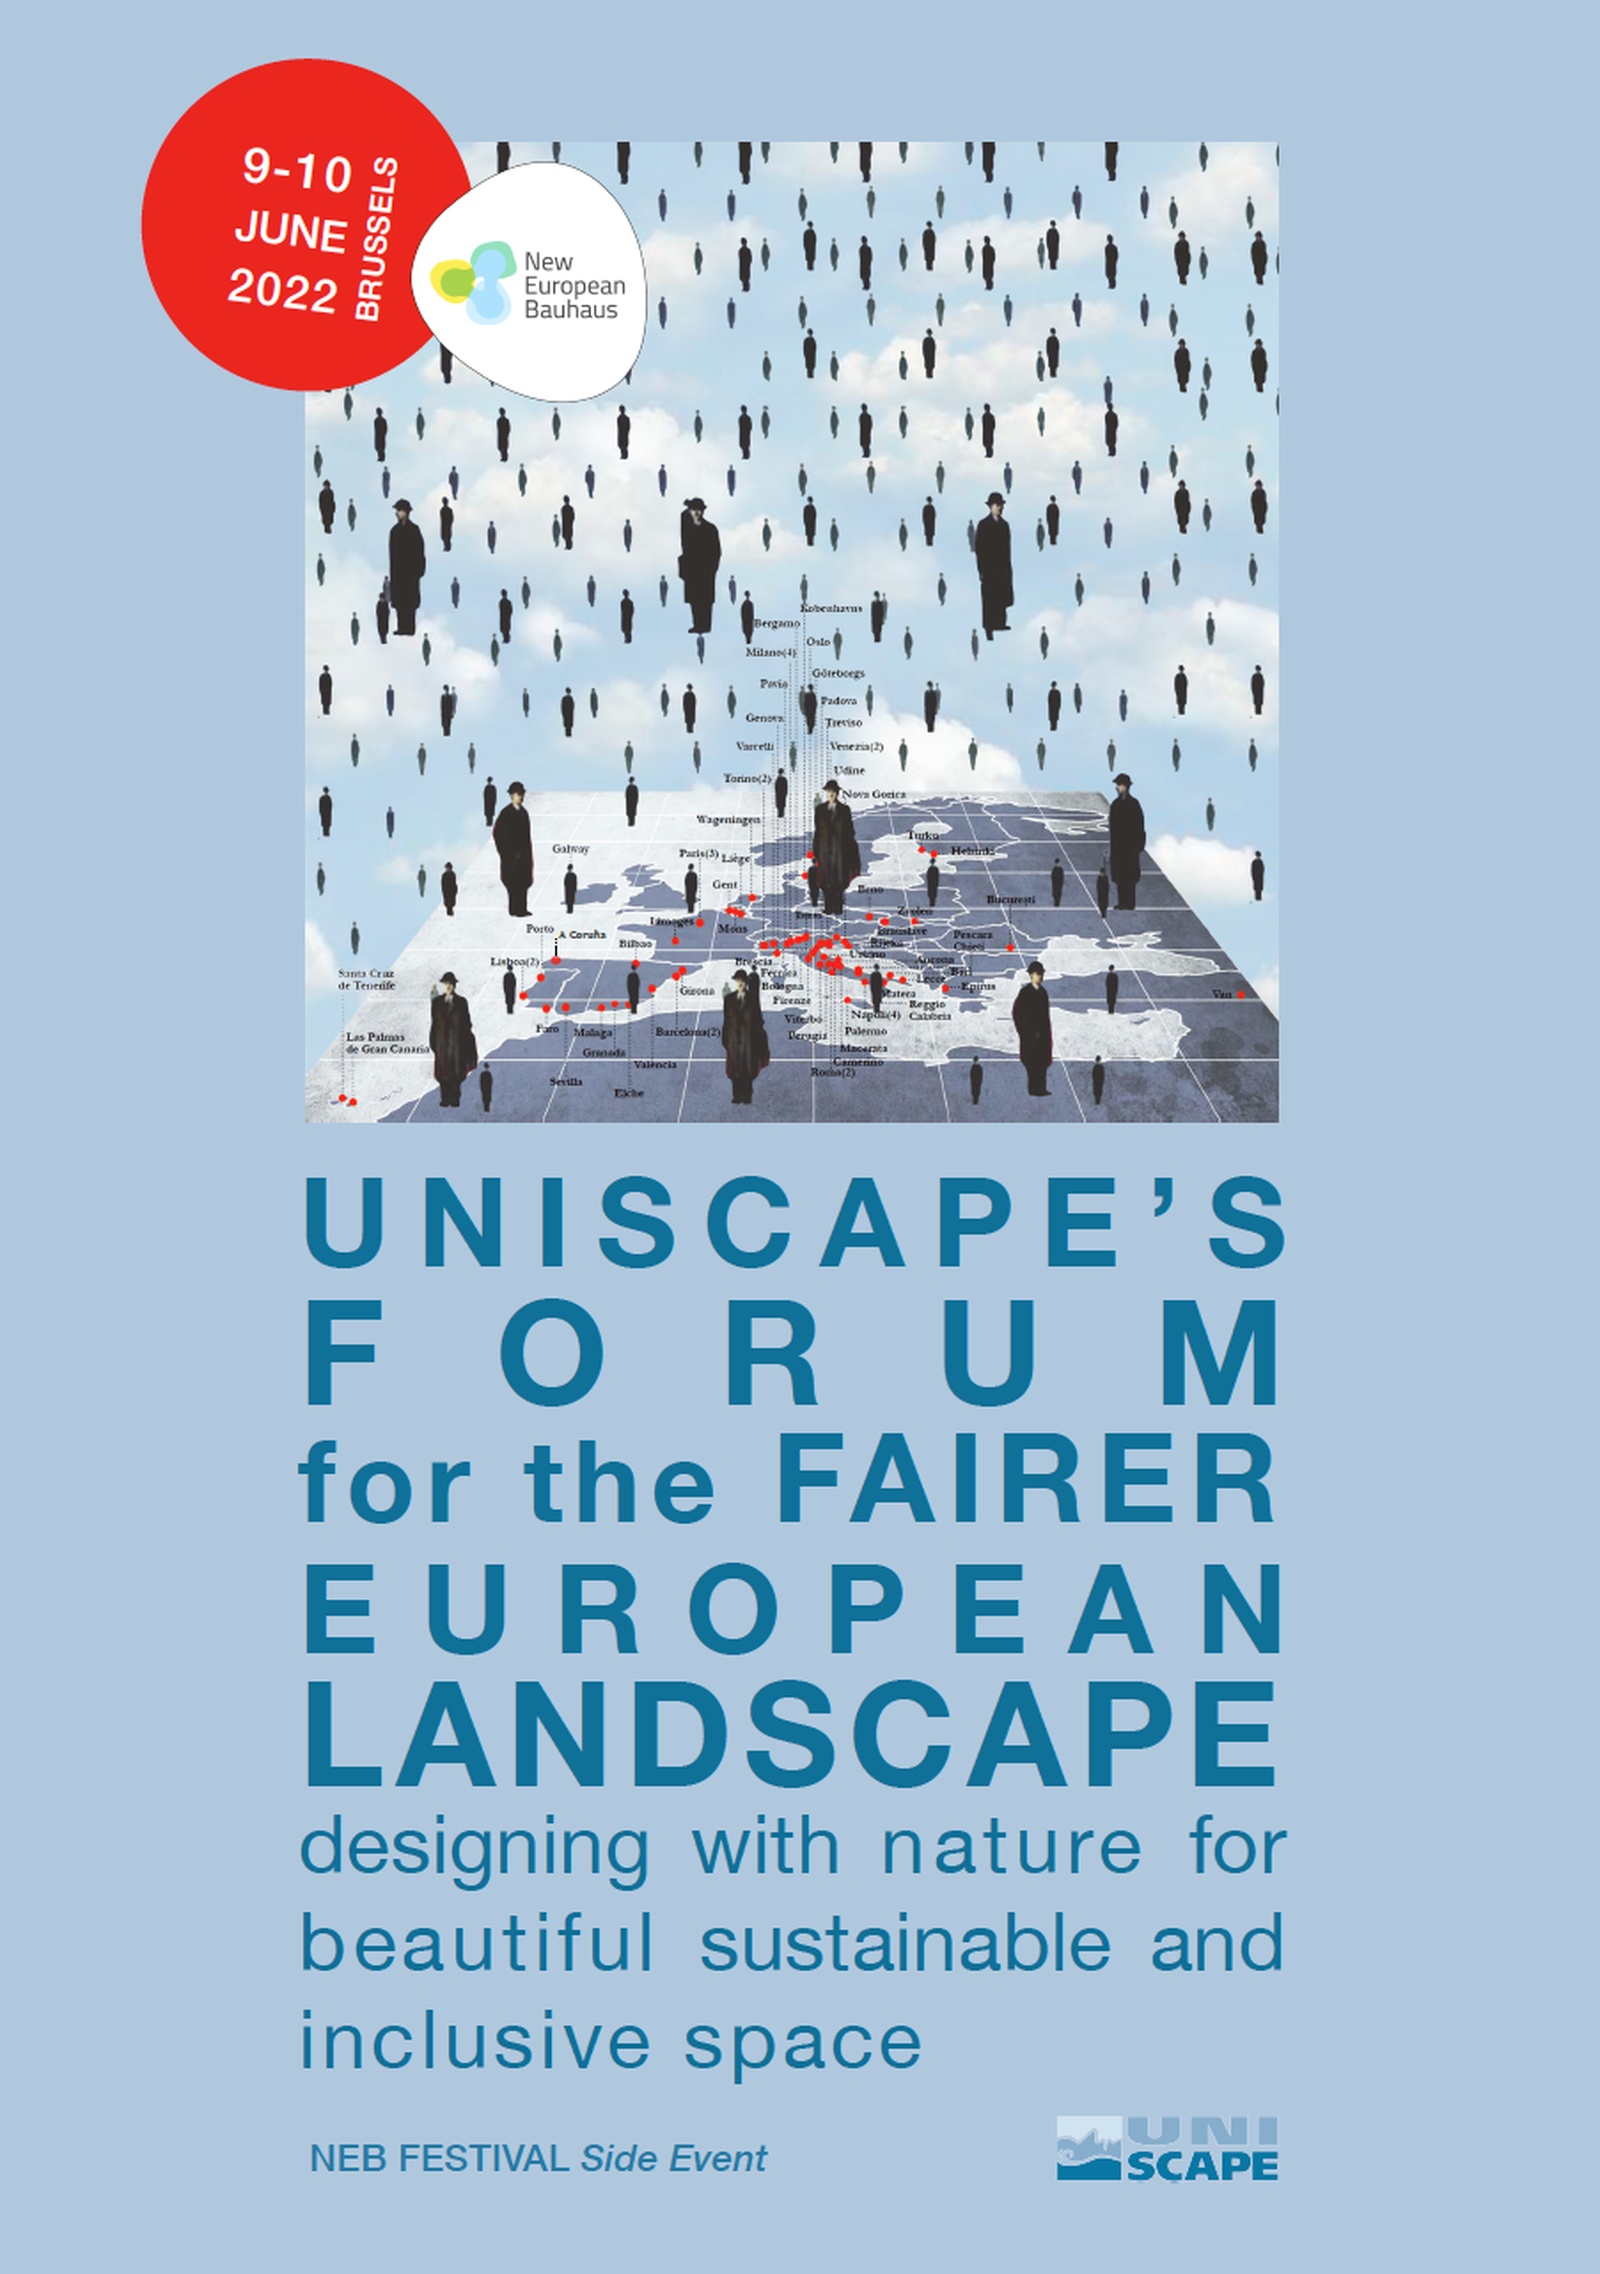 Uniscape's Forum for the Fairer European Landscape